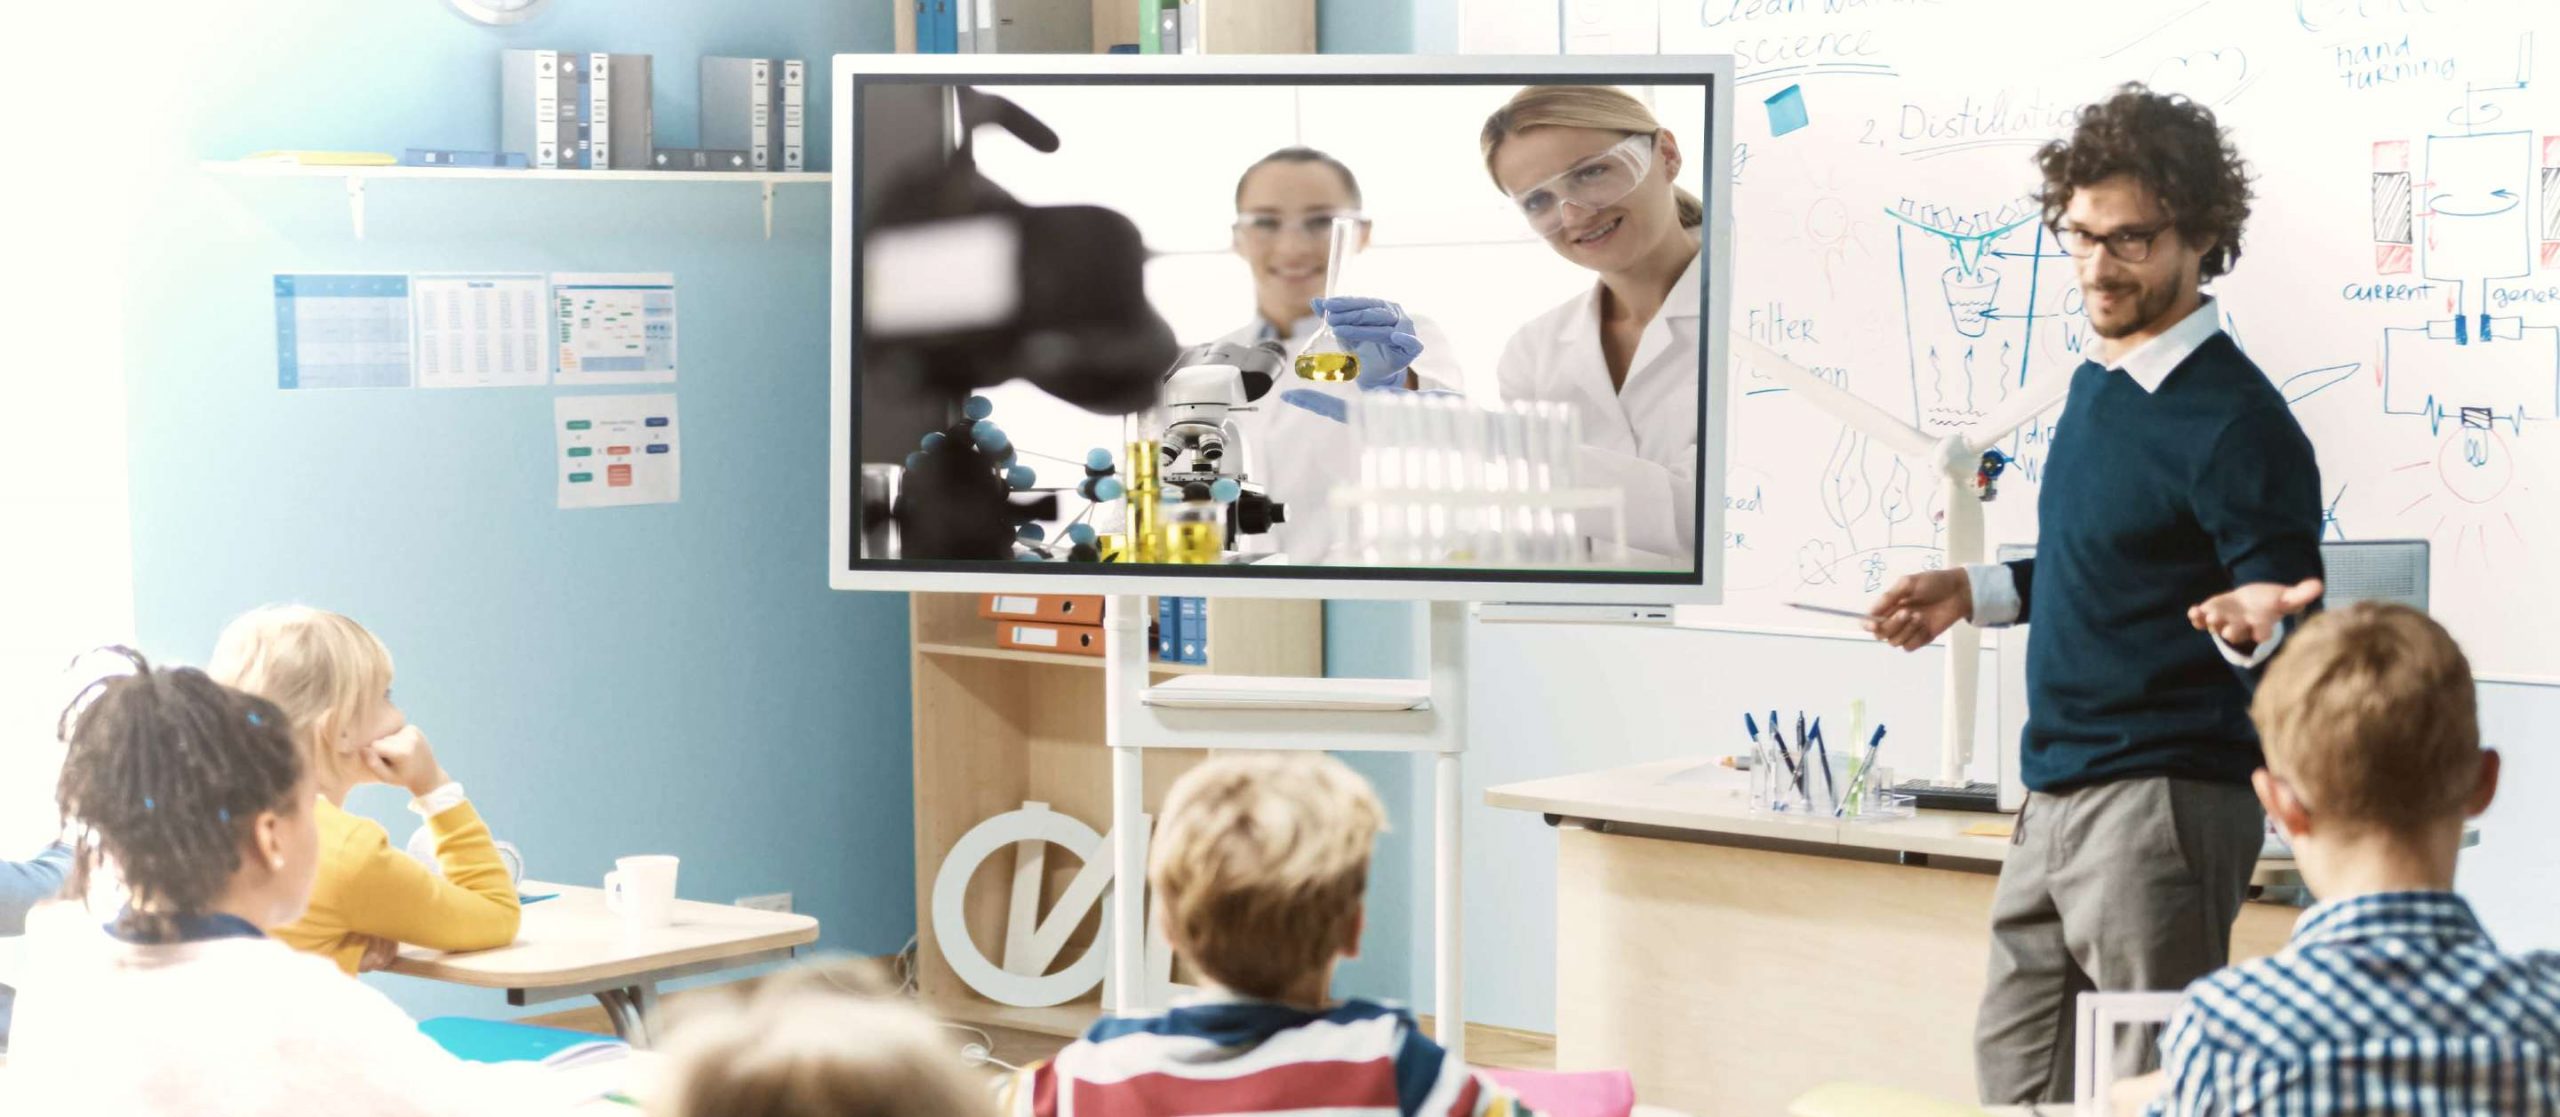 RIALE. L'immagine è presa in una classe, si vedono dei bambini che su una TV seguono in diretta l'esperimento fatto in un laboratorio remoto